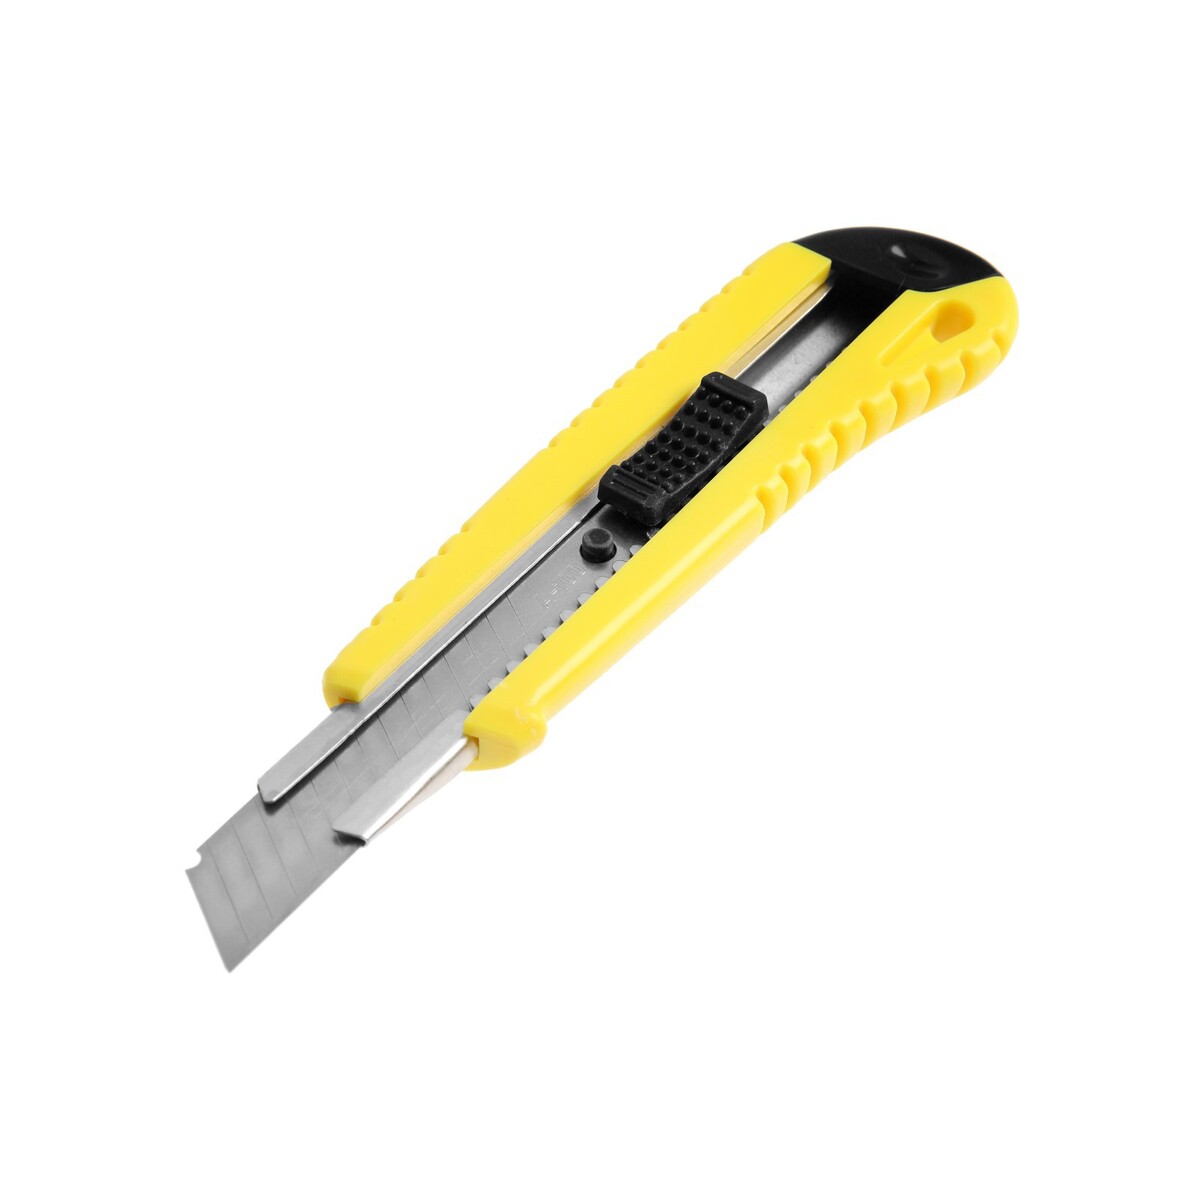 Нож универсальный тундра, металлическая направляющая, квадратный фиксатор, усиленный, 18 мм нож универсальный тундра усиленный металлический квадратный фиксатор 18 мм